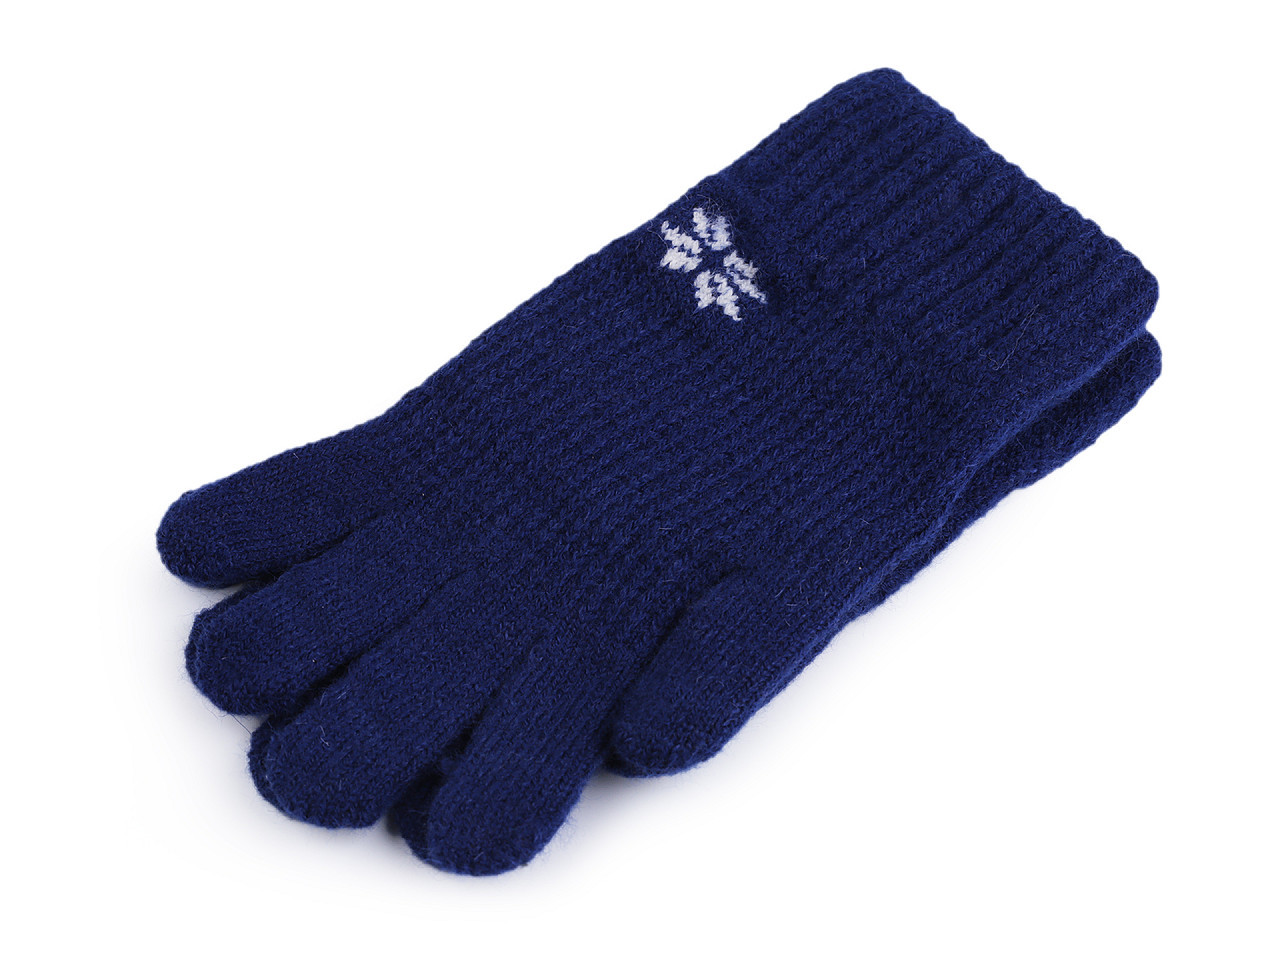 Dámské / dívčí pletené rukavice, barva 9 modrá berlínská